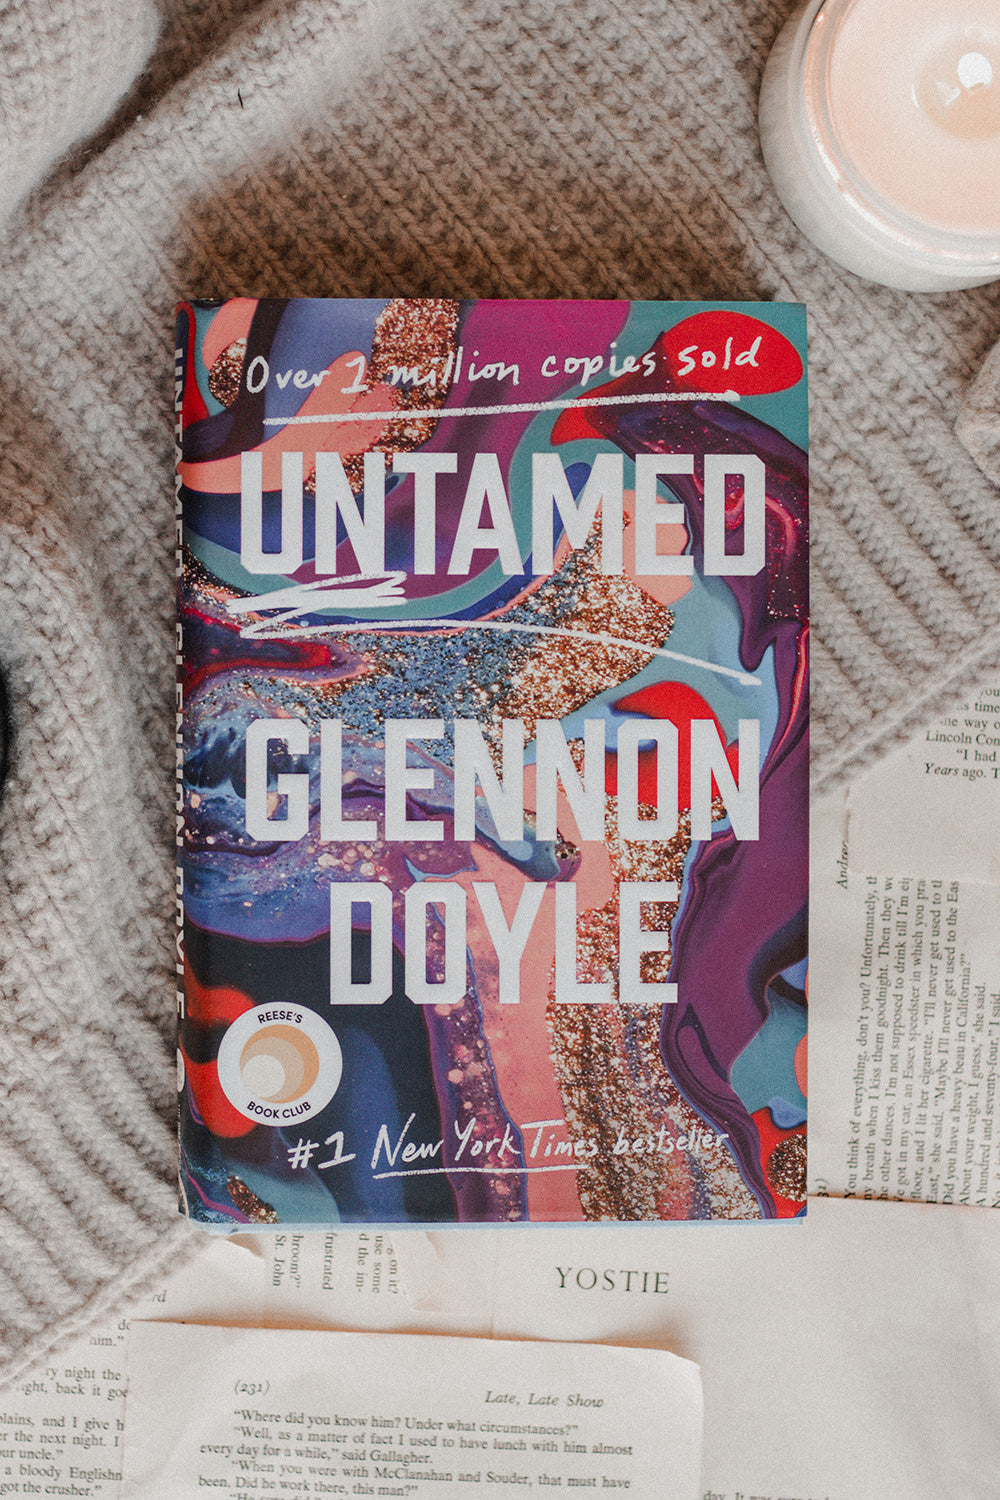 Untamed by Glennon Doyle